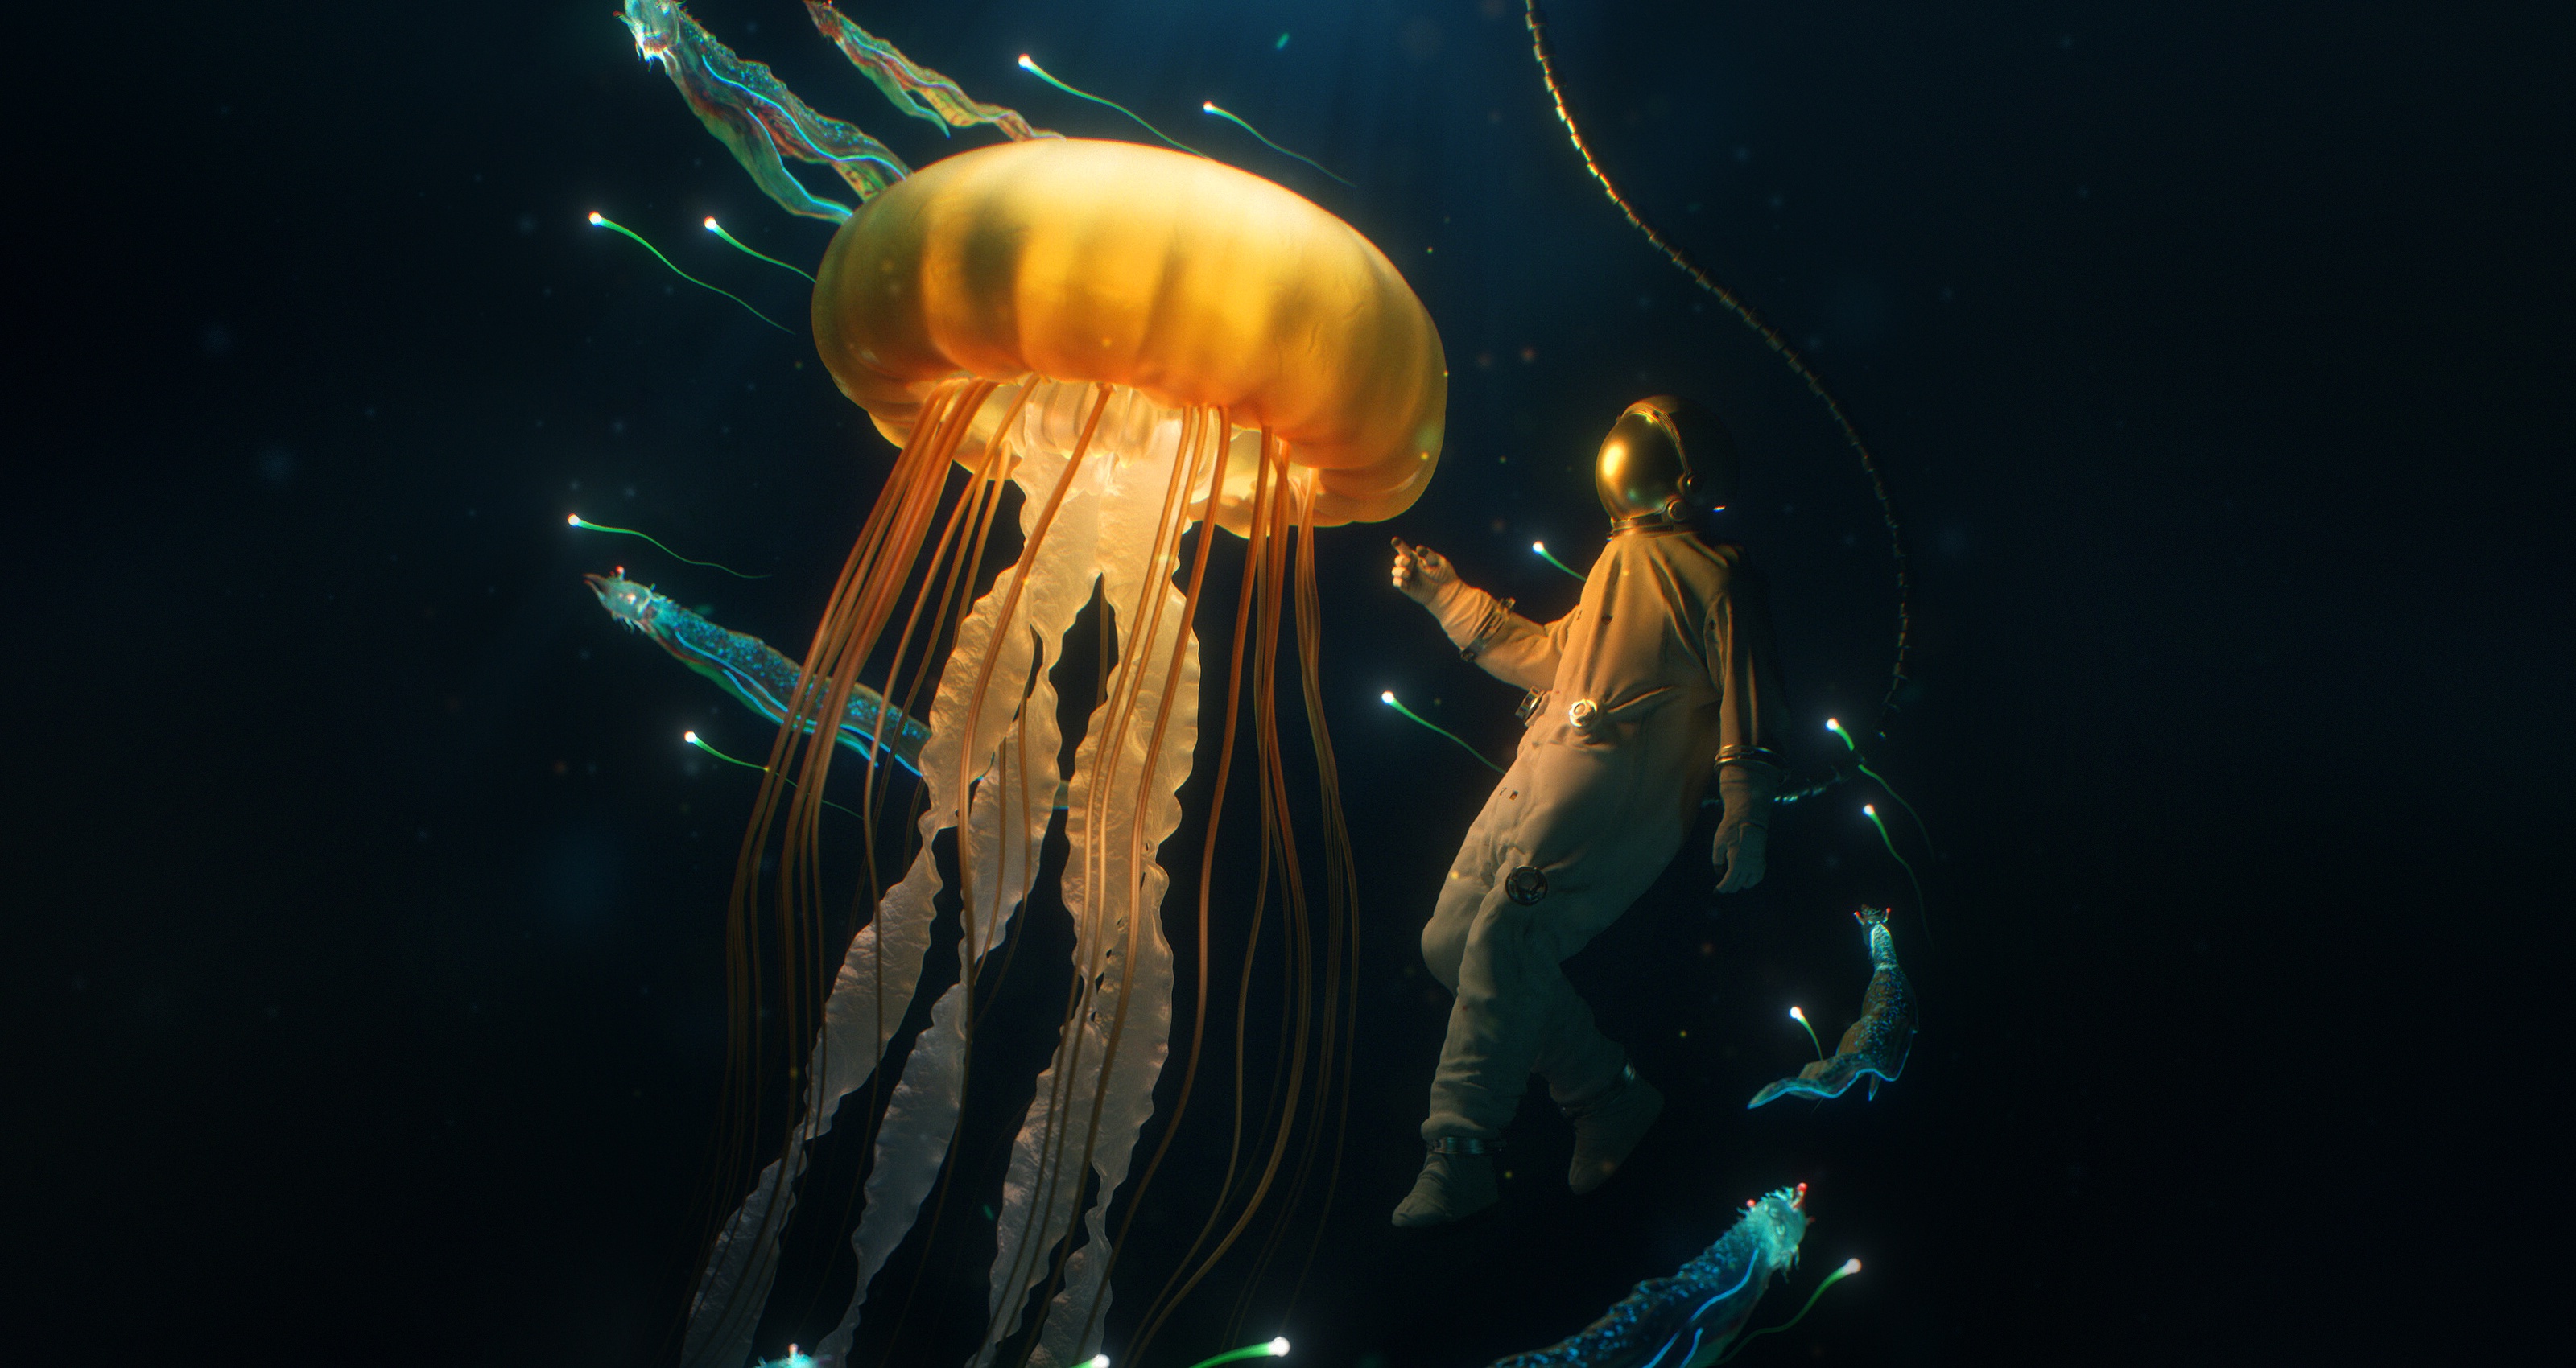 fantasy, underwater, diver, jellyfish